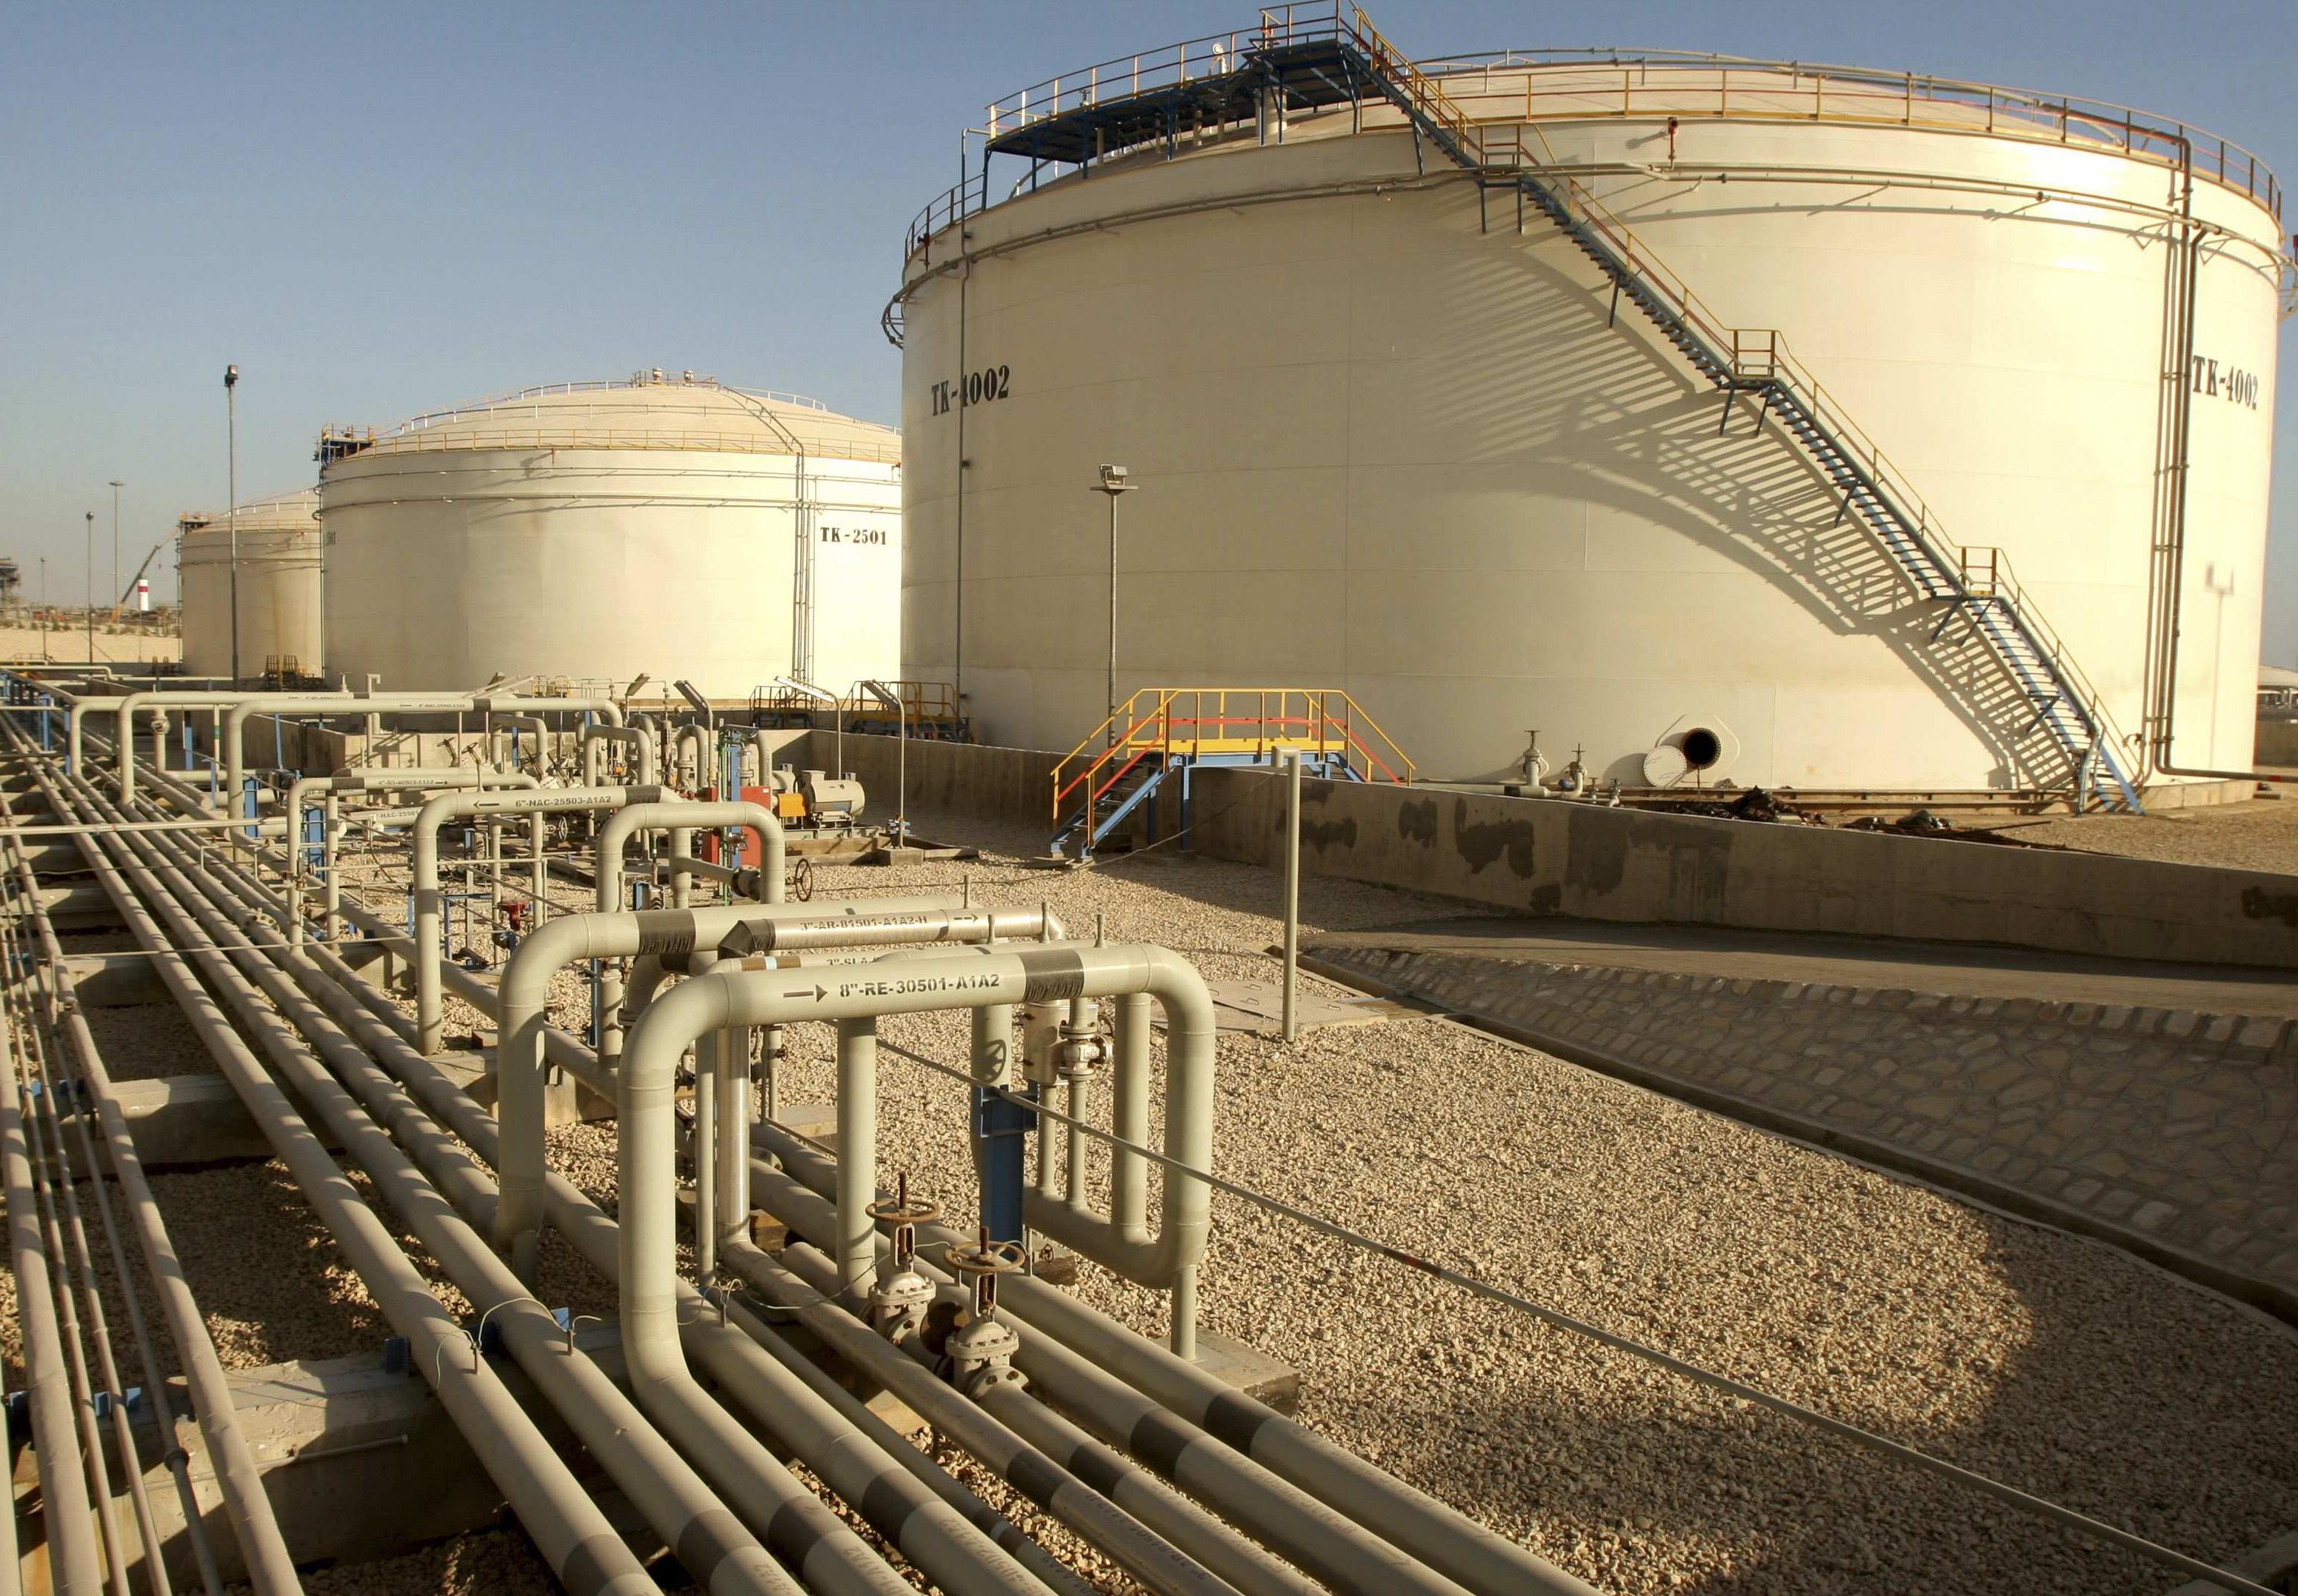 ΟΠΕΚ: Πιθανότητα συμφωνίας για την παραγωγή πετρελαίου τον Νοέμβριο